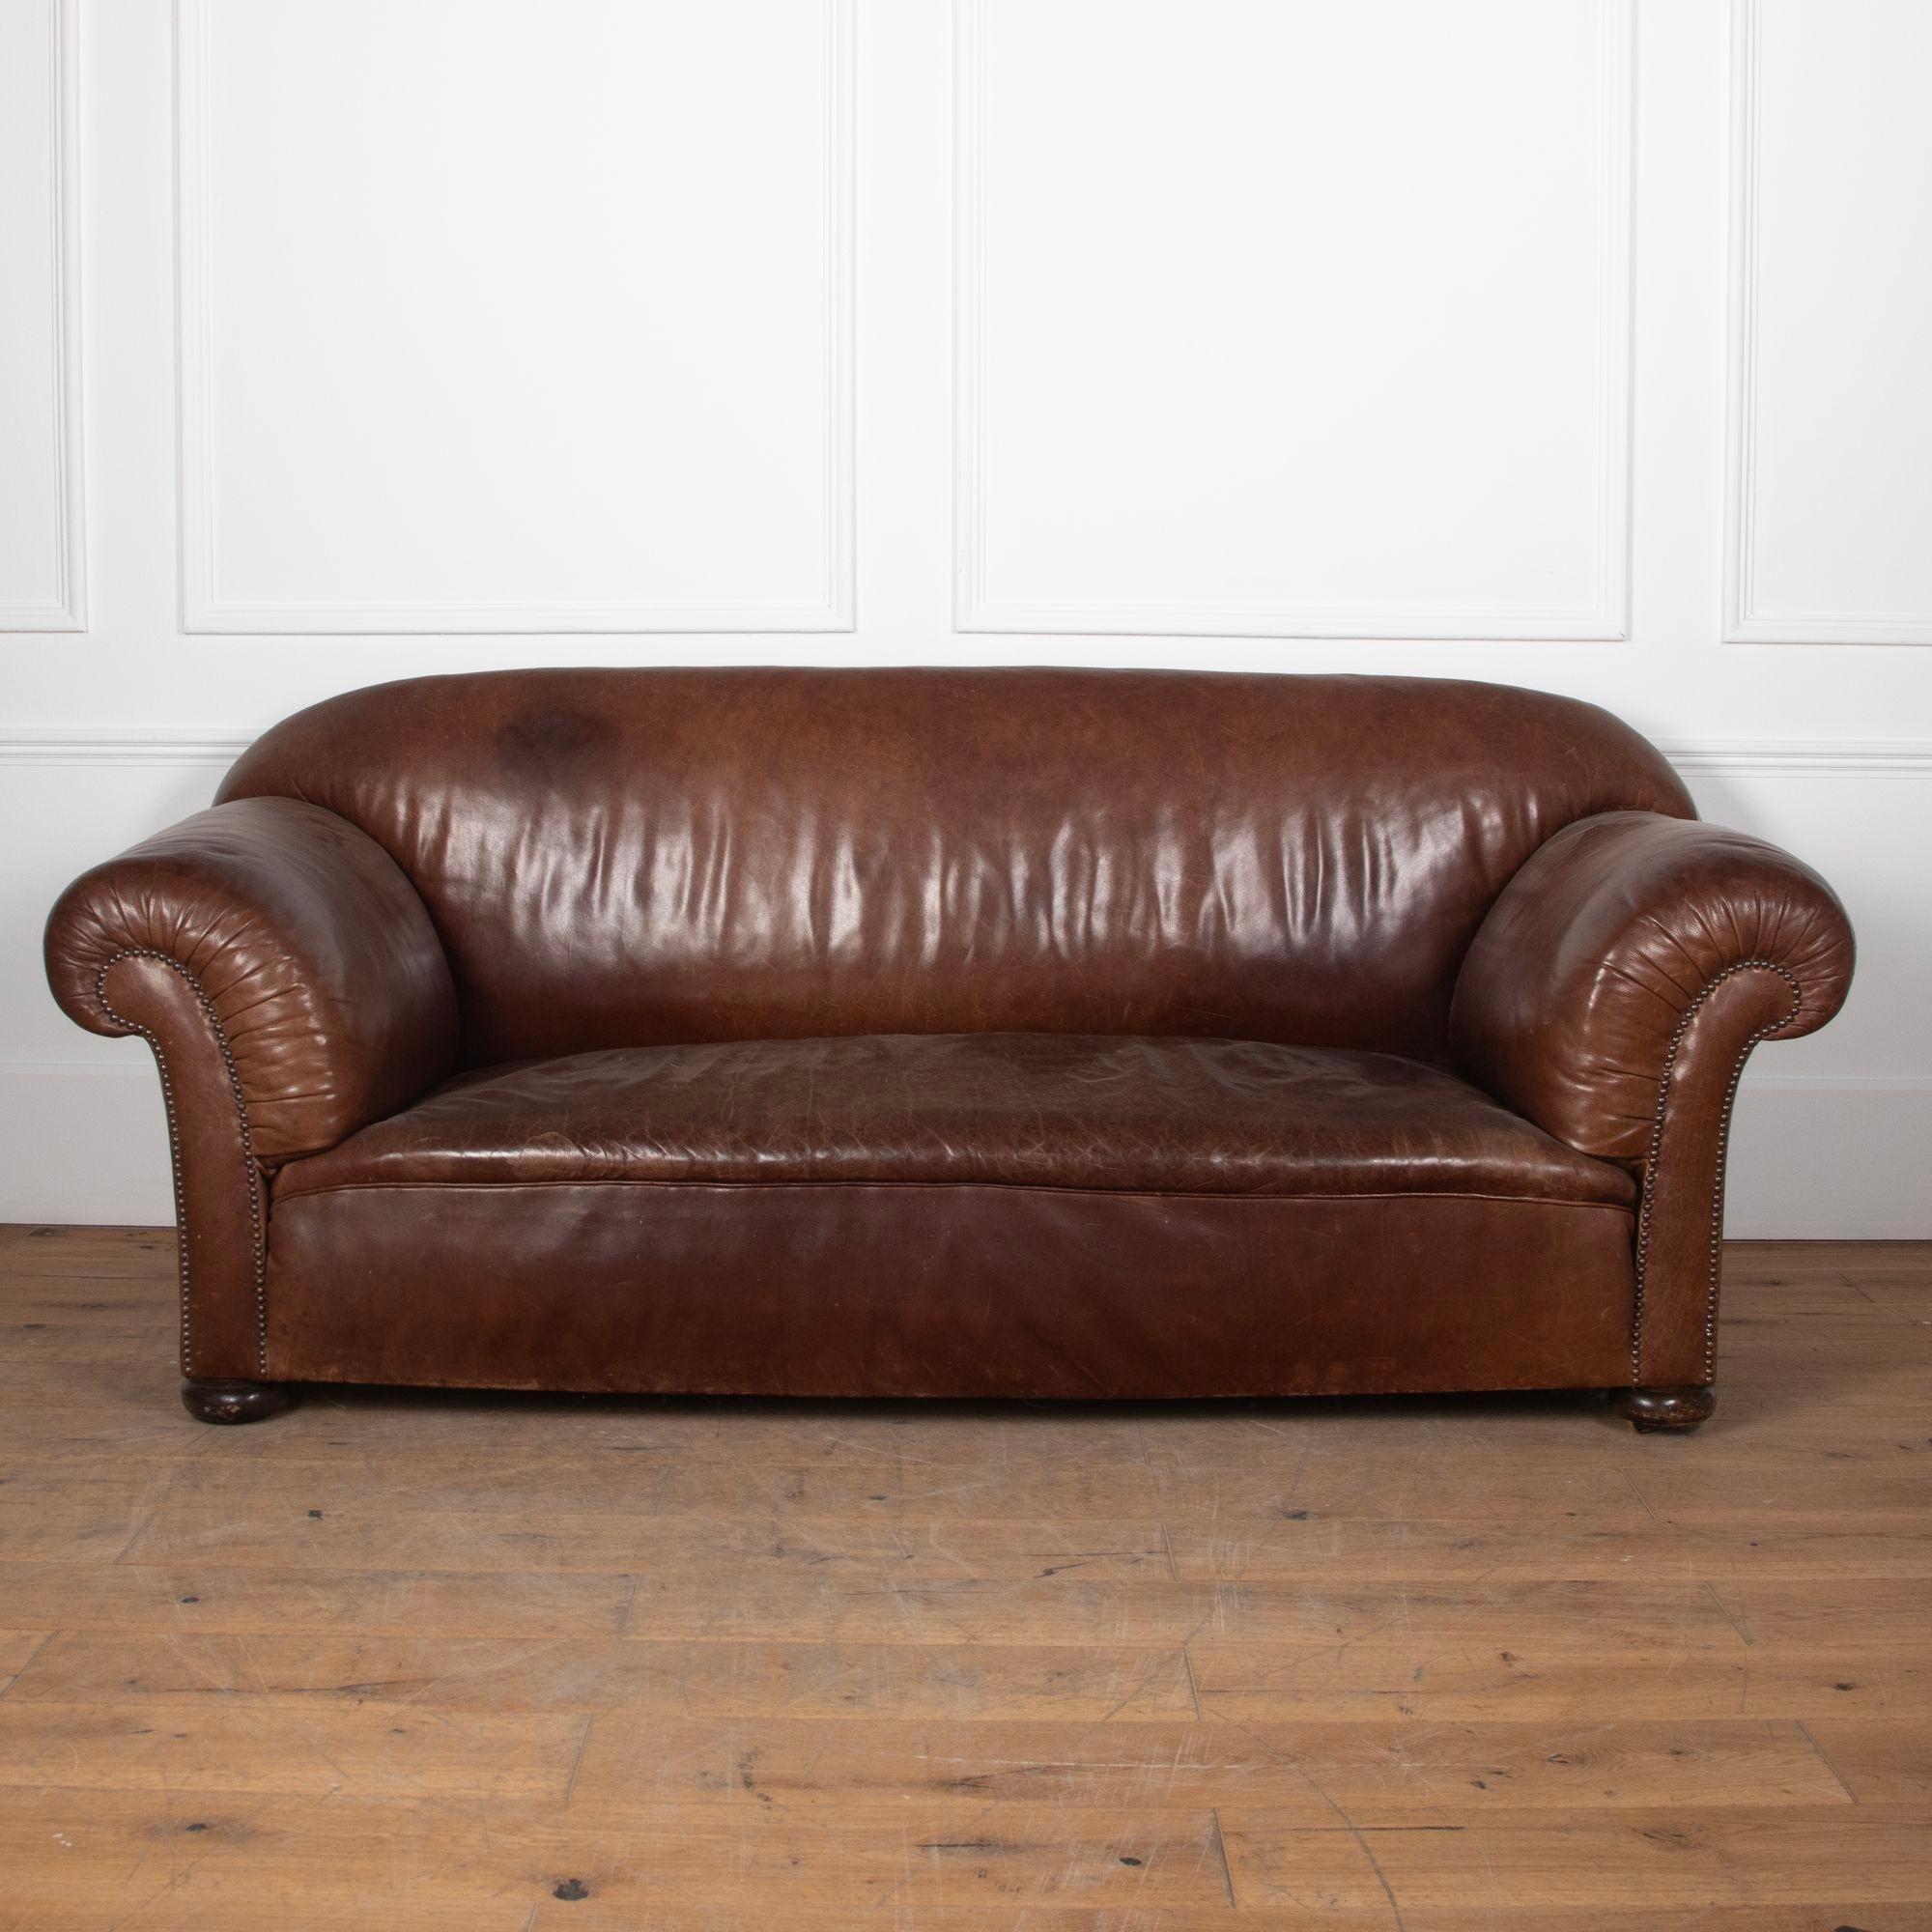 Chesterfield-Sofa aus Leder des 19. Jahrhunderts von Maple & Co.
Um 1890.